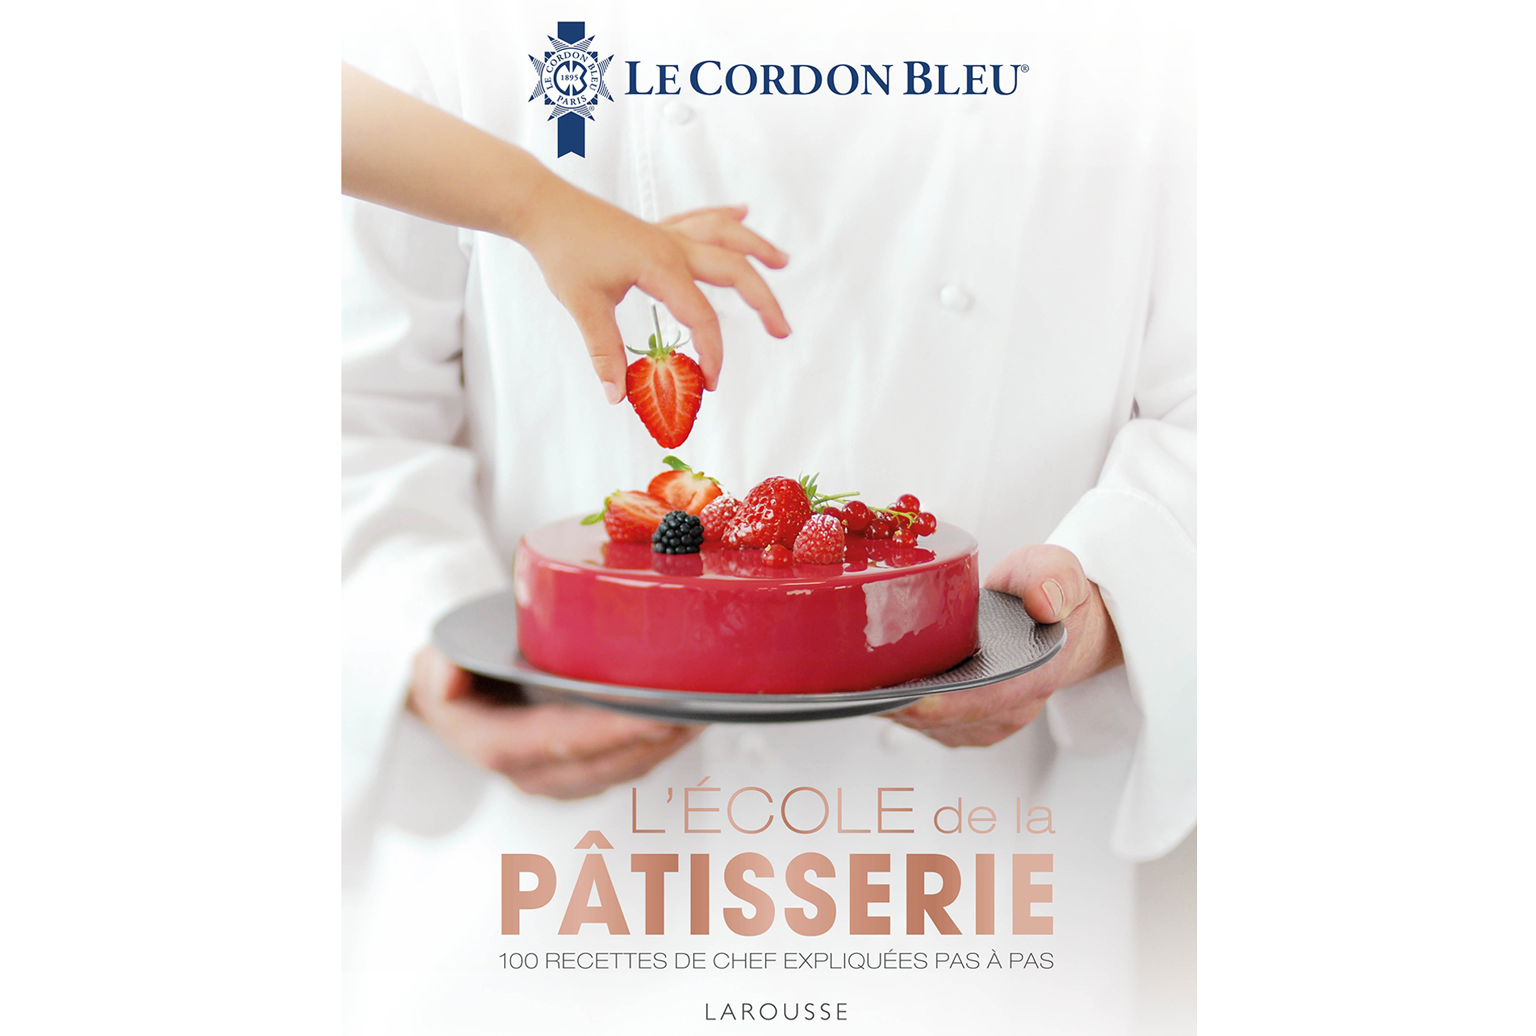 L’École de la pâtisserie by Le Cordon Bleu® institute